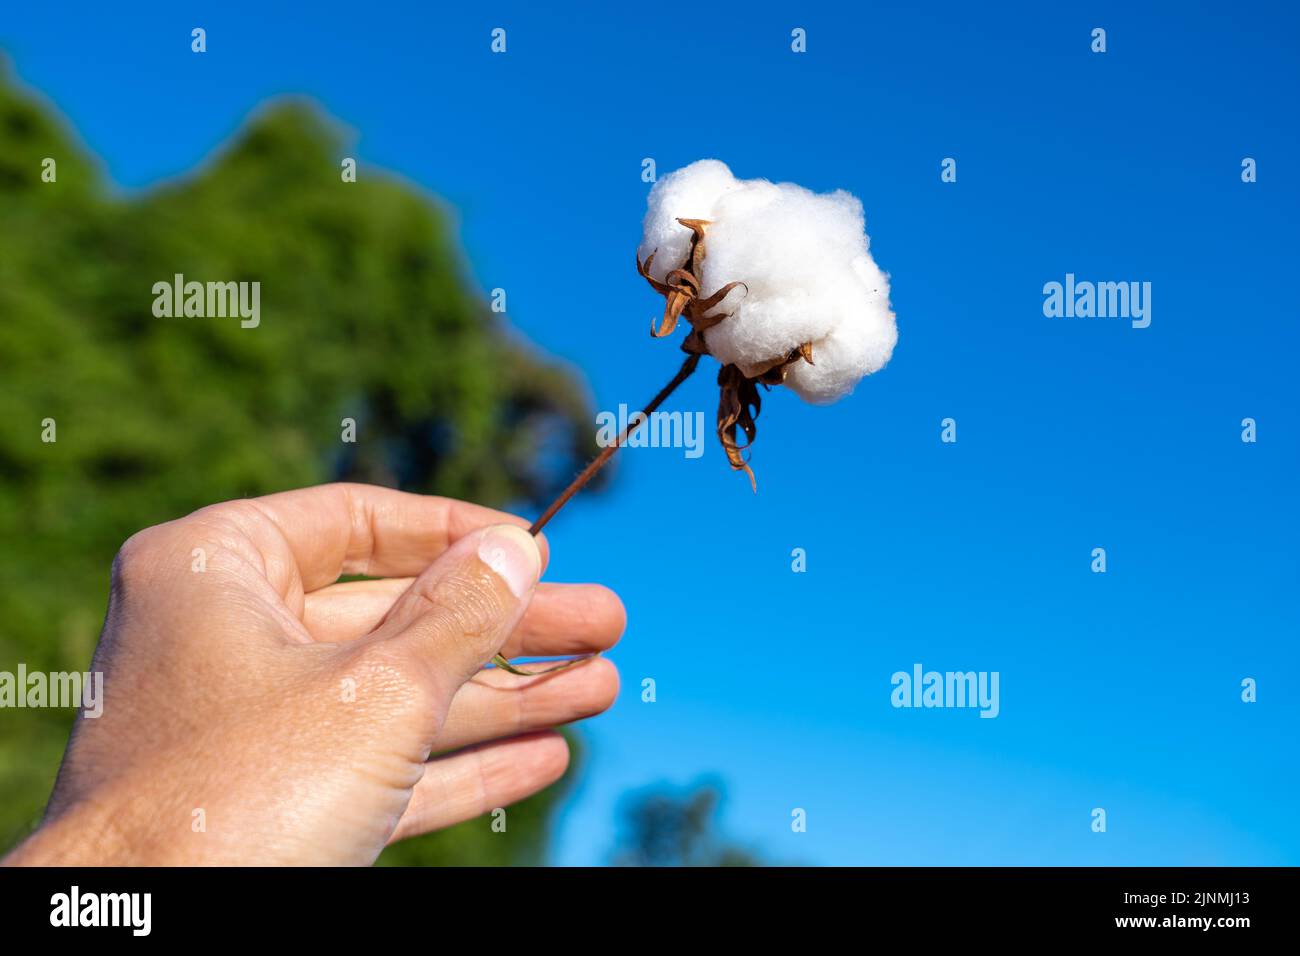 Nahaufnahme eines Farmers, der einen Zweig aus Baumwollknospen in einer Plantage mit unscharfem blauen Himmel hält. Mato Grosso, Brasilien. Konzept der Landwirtschaft. Stockfoto